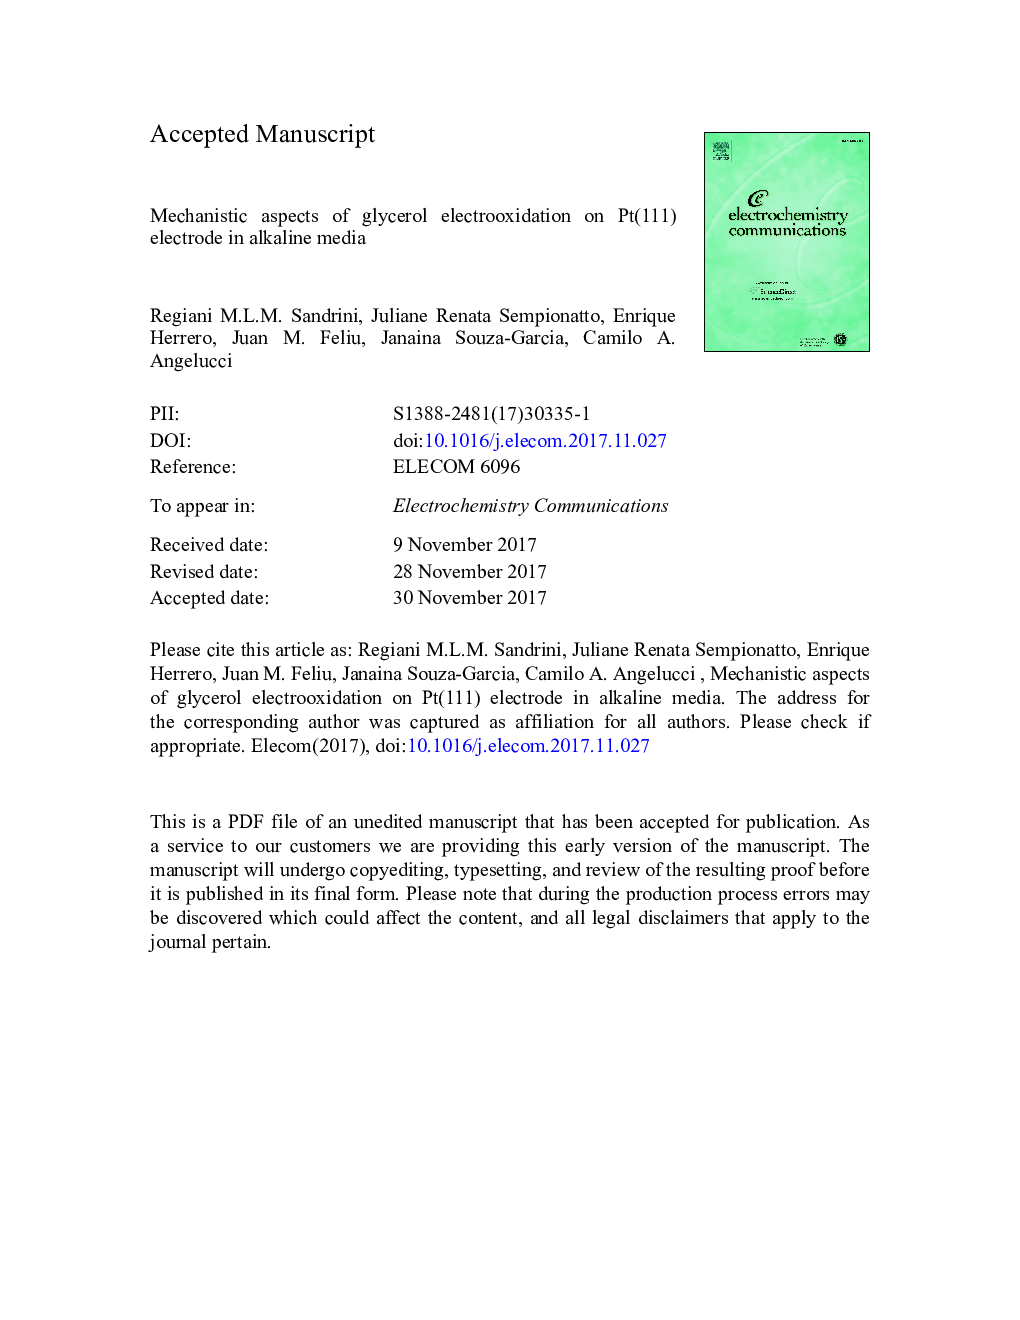 Mechanistic aspects of glycerol electrooxidation on Pt(111) electrode in alkaline media